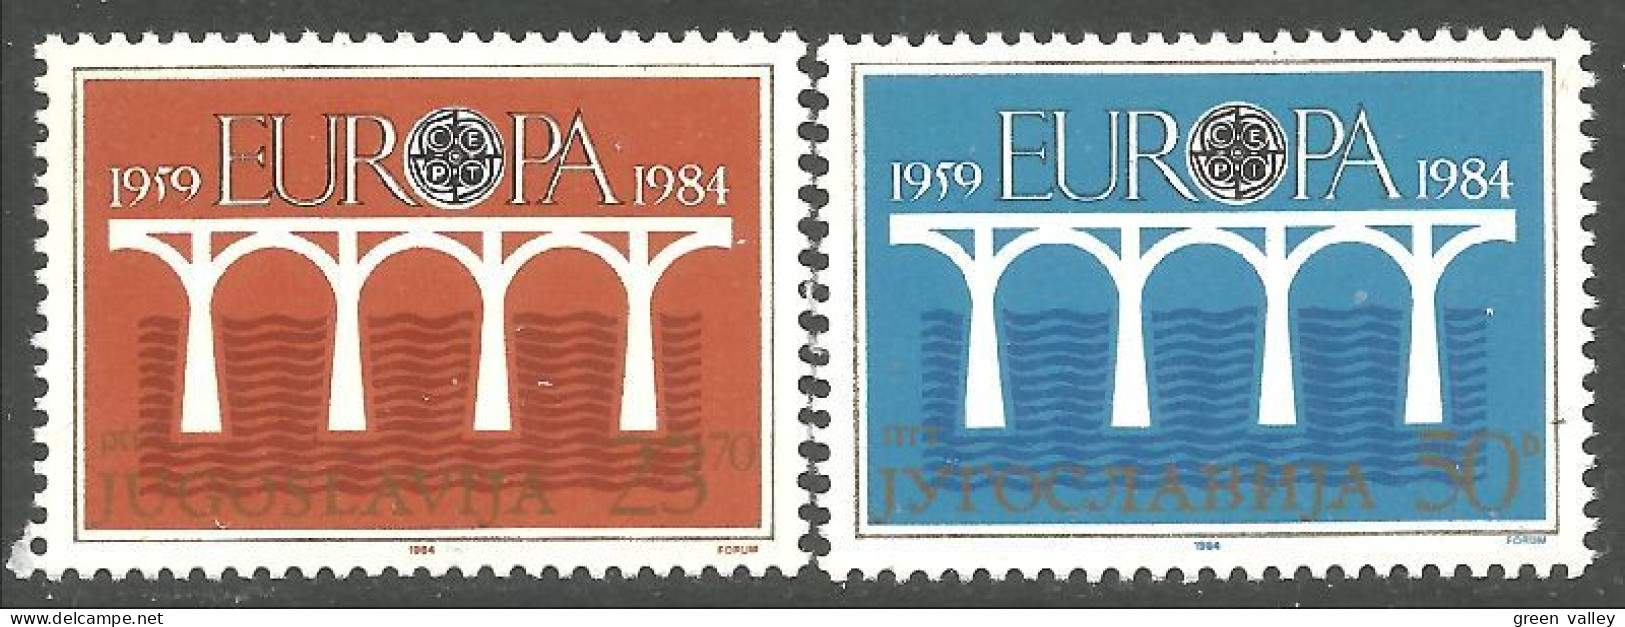 EU84-26c EUROPA CEPT 1984 Jugoslavia Pont Bridge Brücke Puente Brug Ponte MNH ** Neuf SC - Unused Stamps